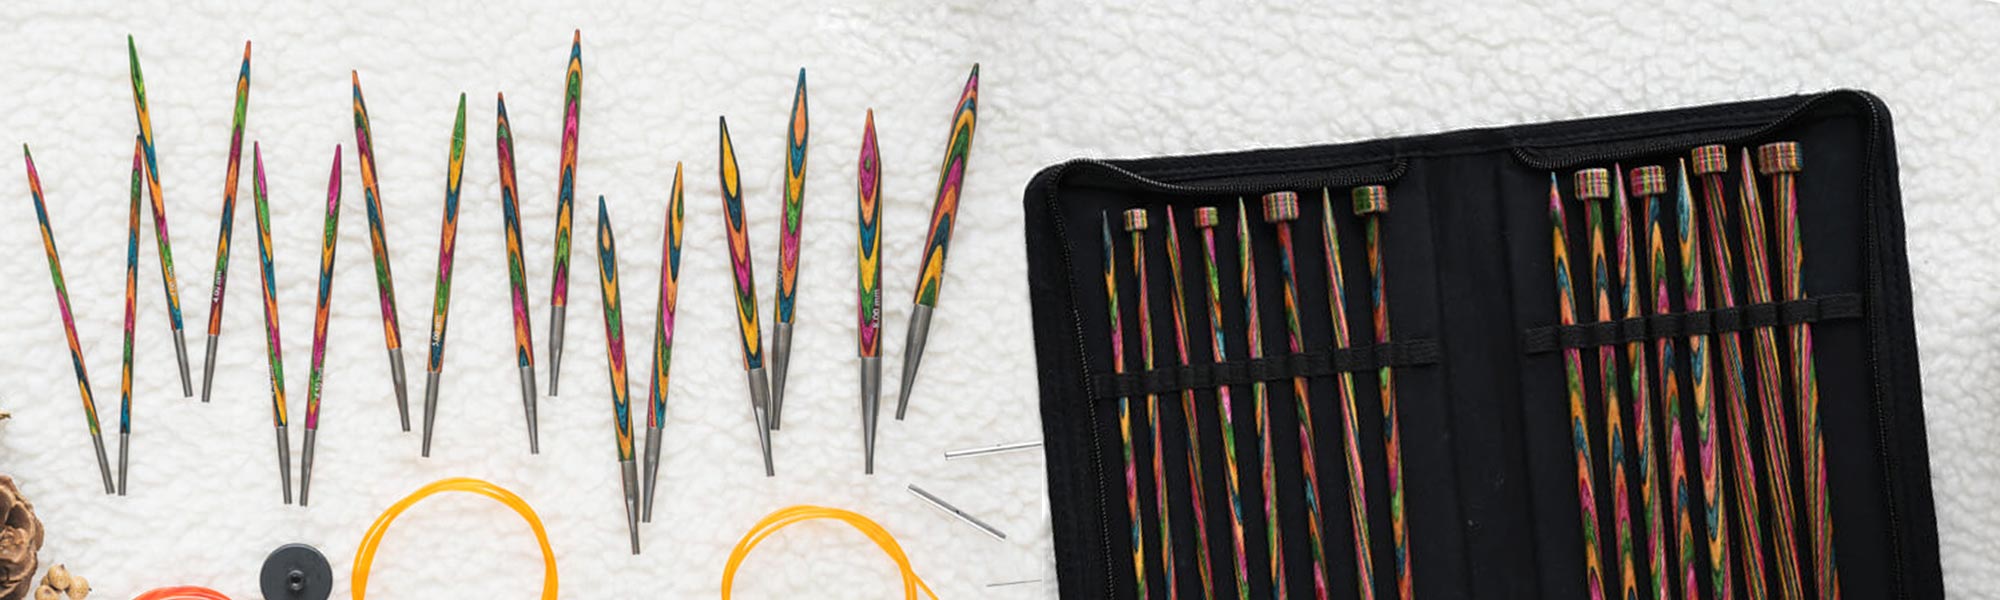 The Most Beautiful Knitting Needles